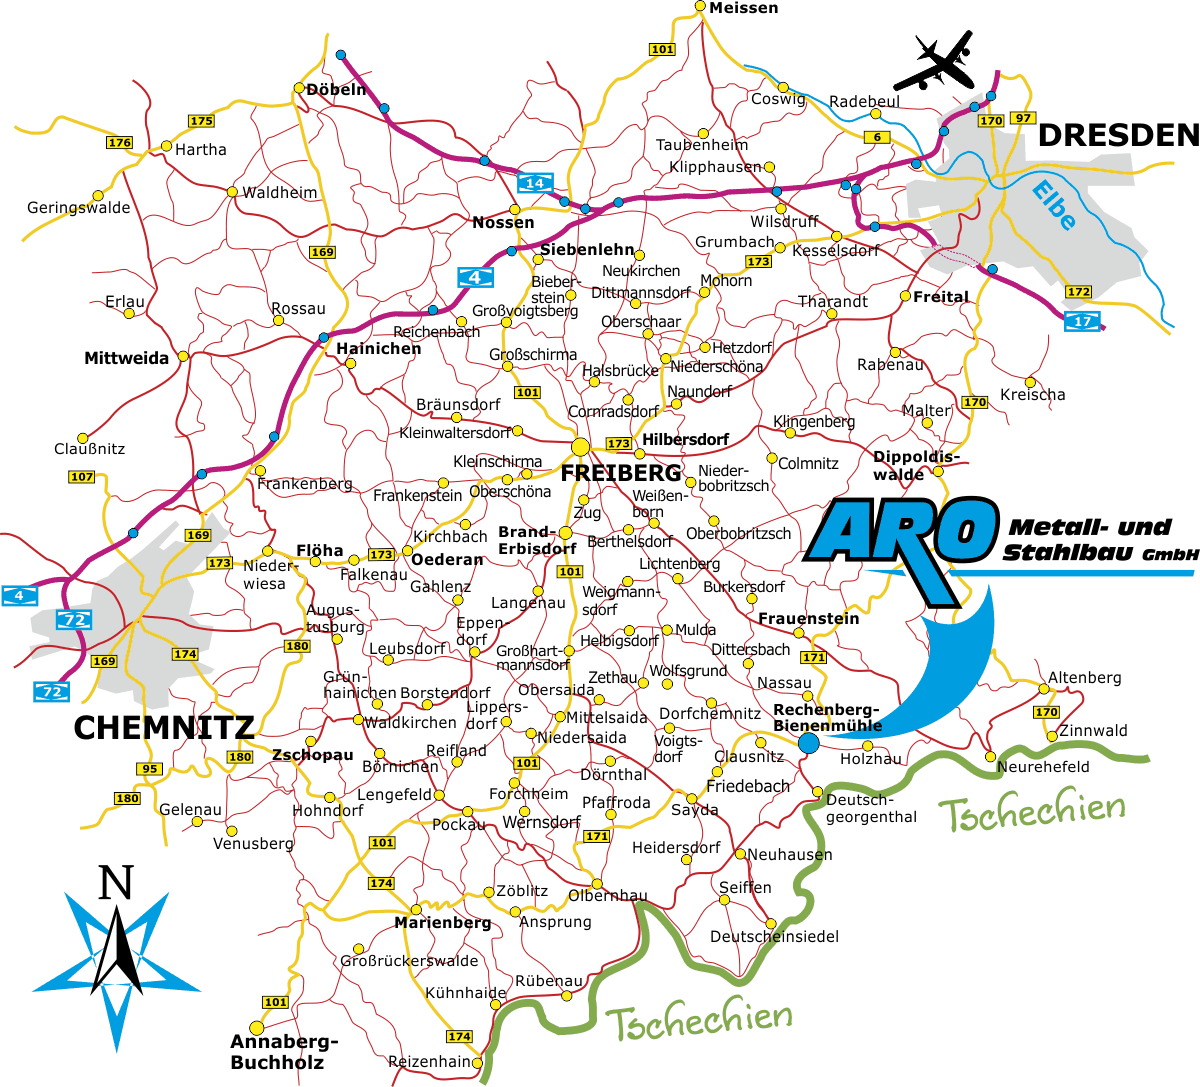 Karte Dresden